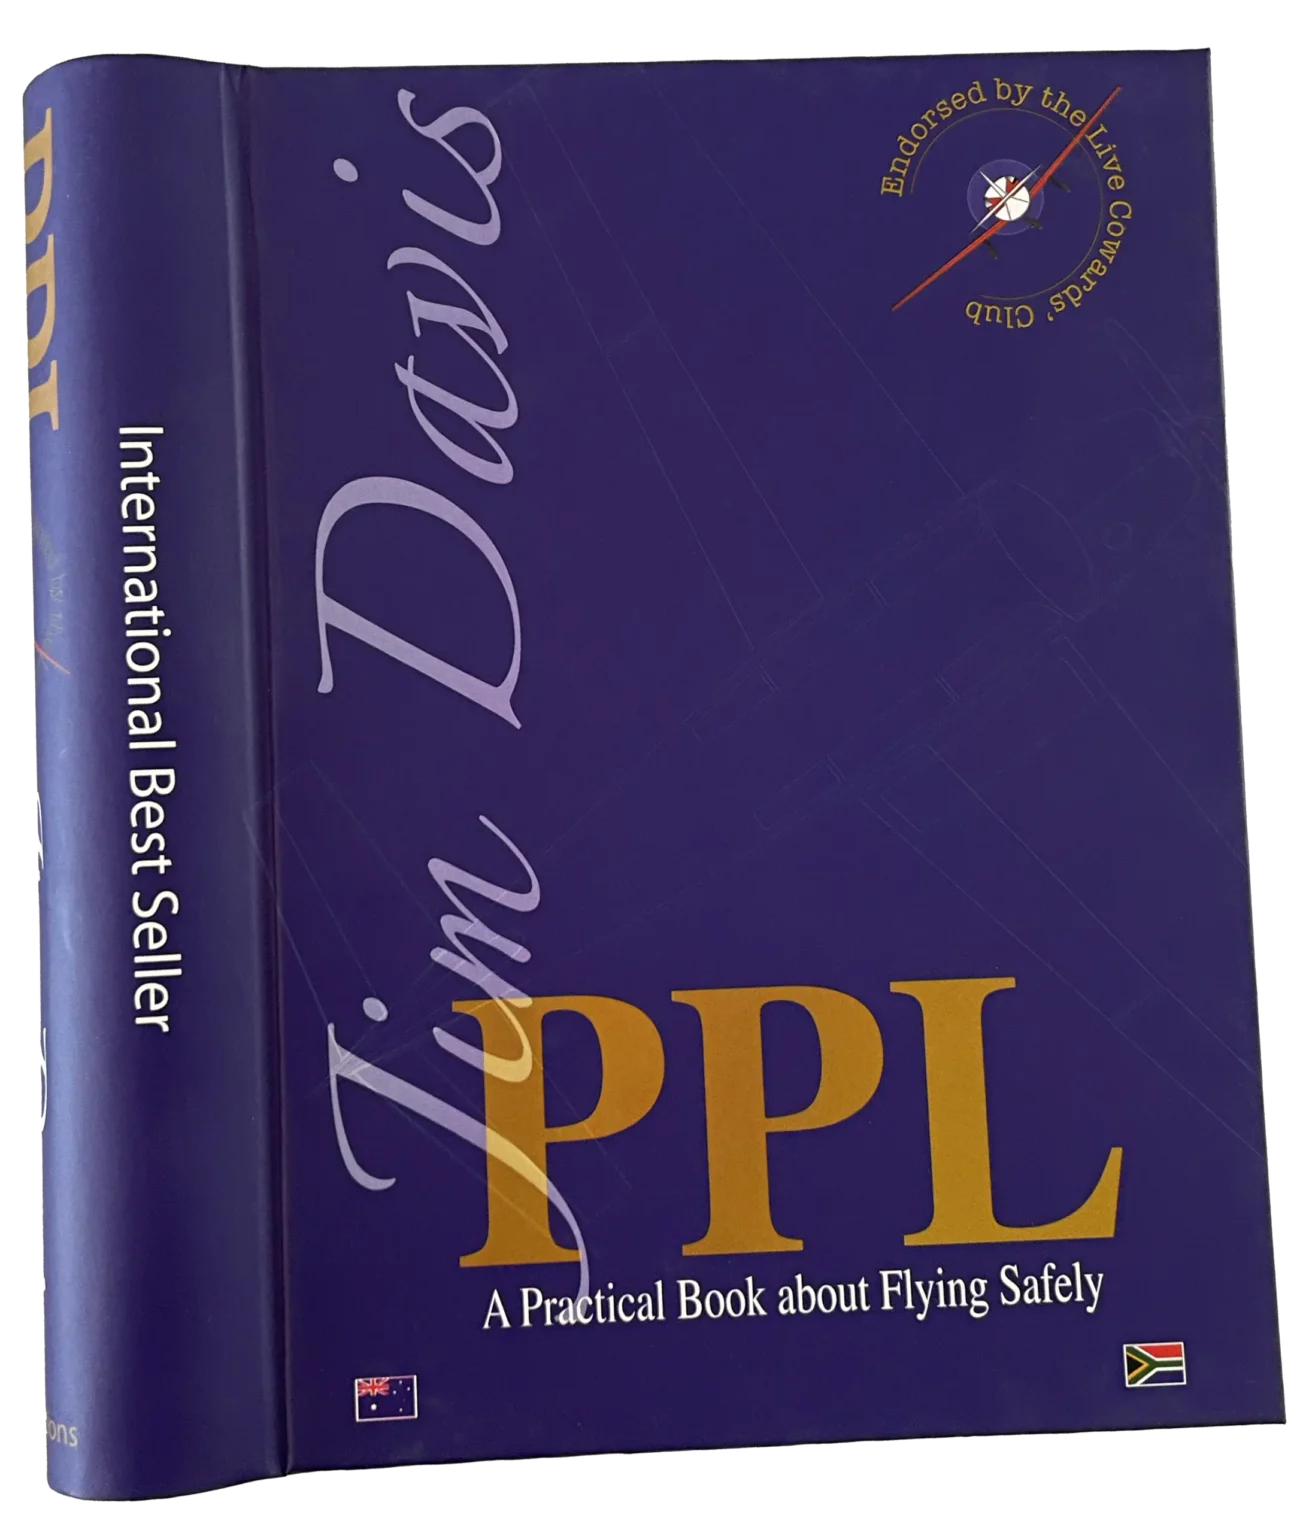 Cover Image of PPL By Jim Davis, a PilotTrain publication.